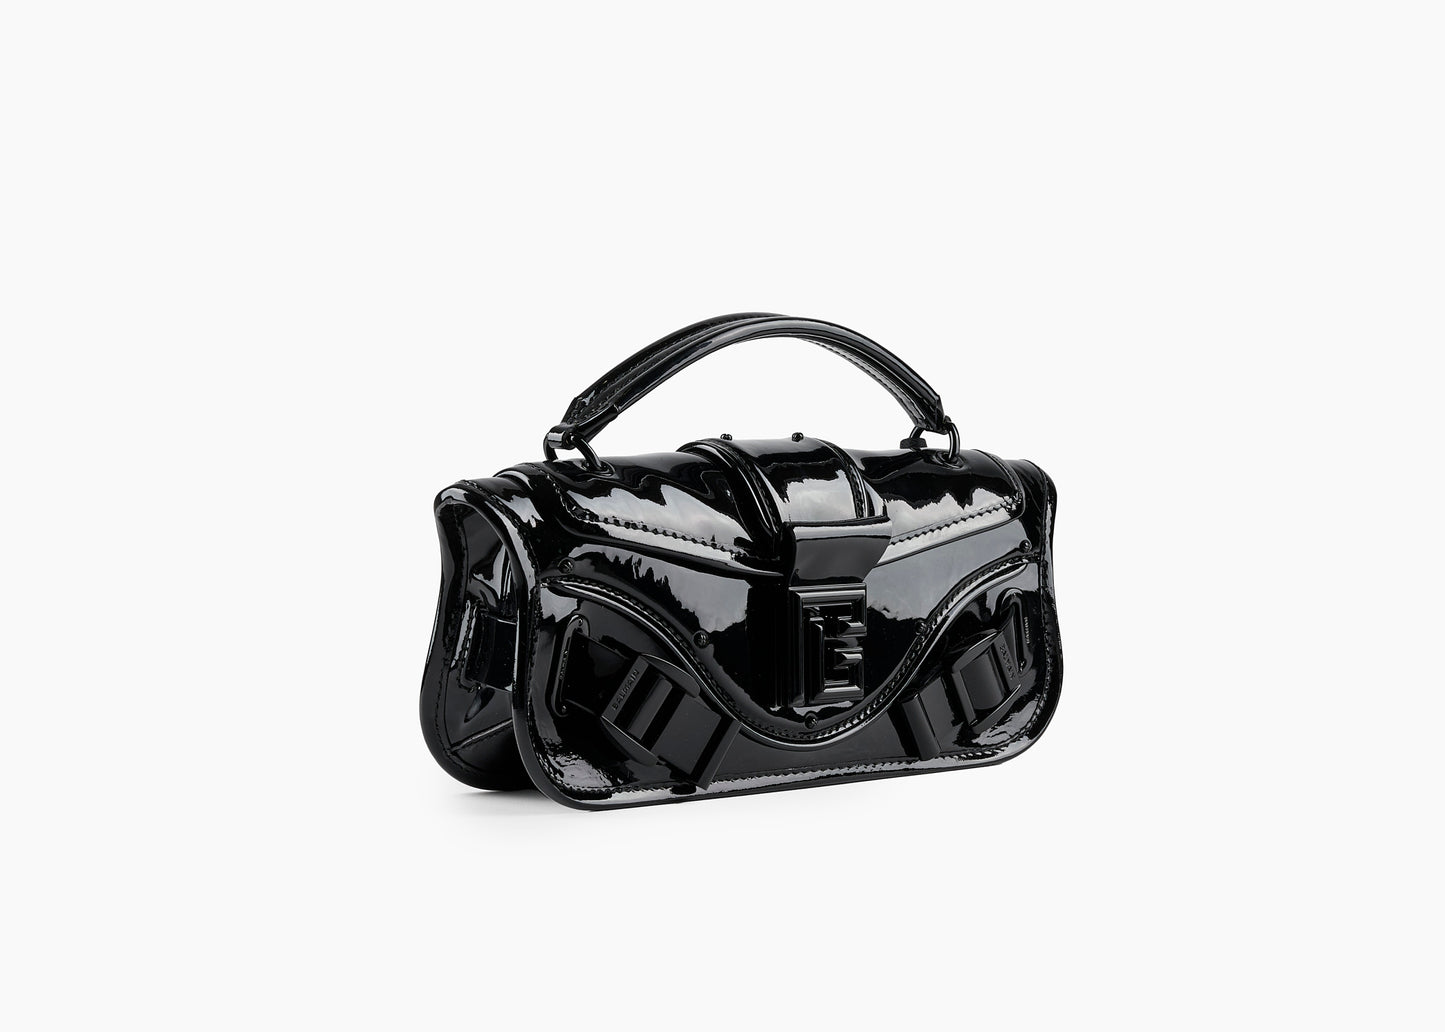 SALE Blaze Pouch Bag Patent Leather Black was $3395